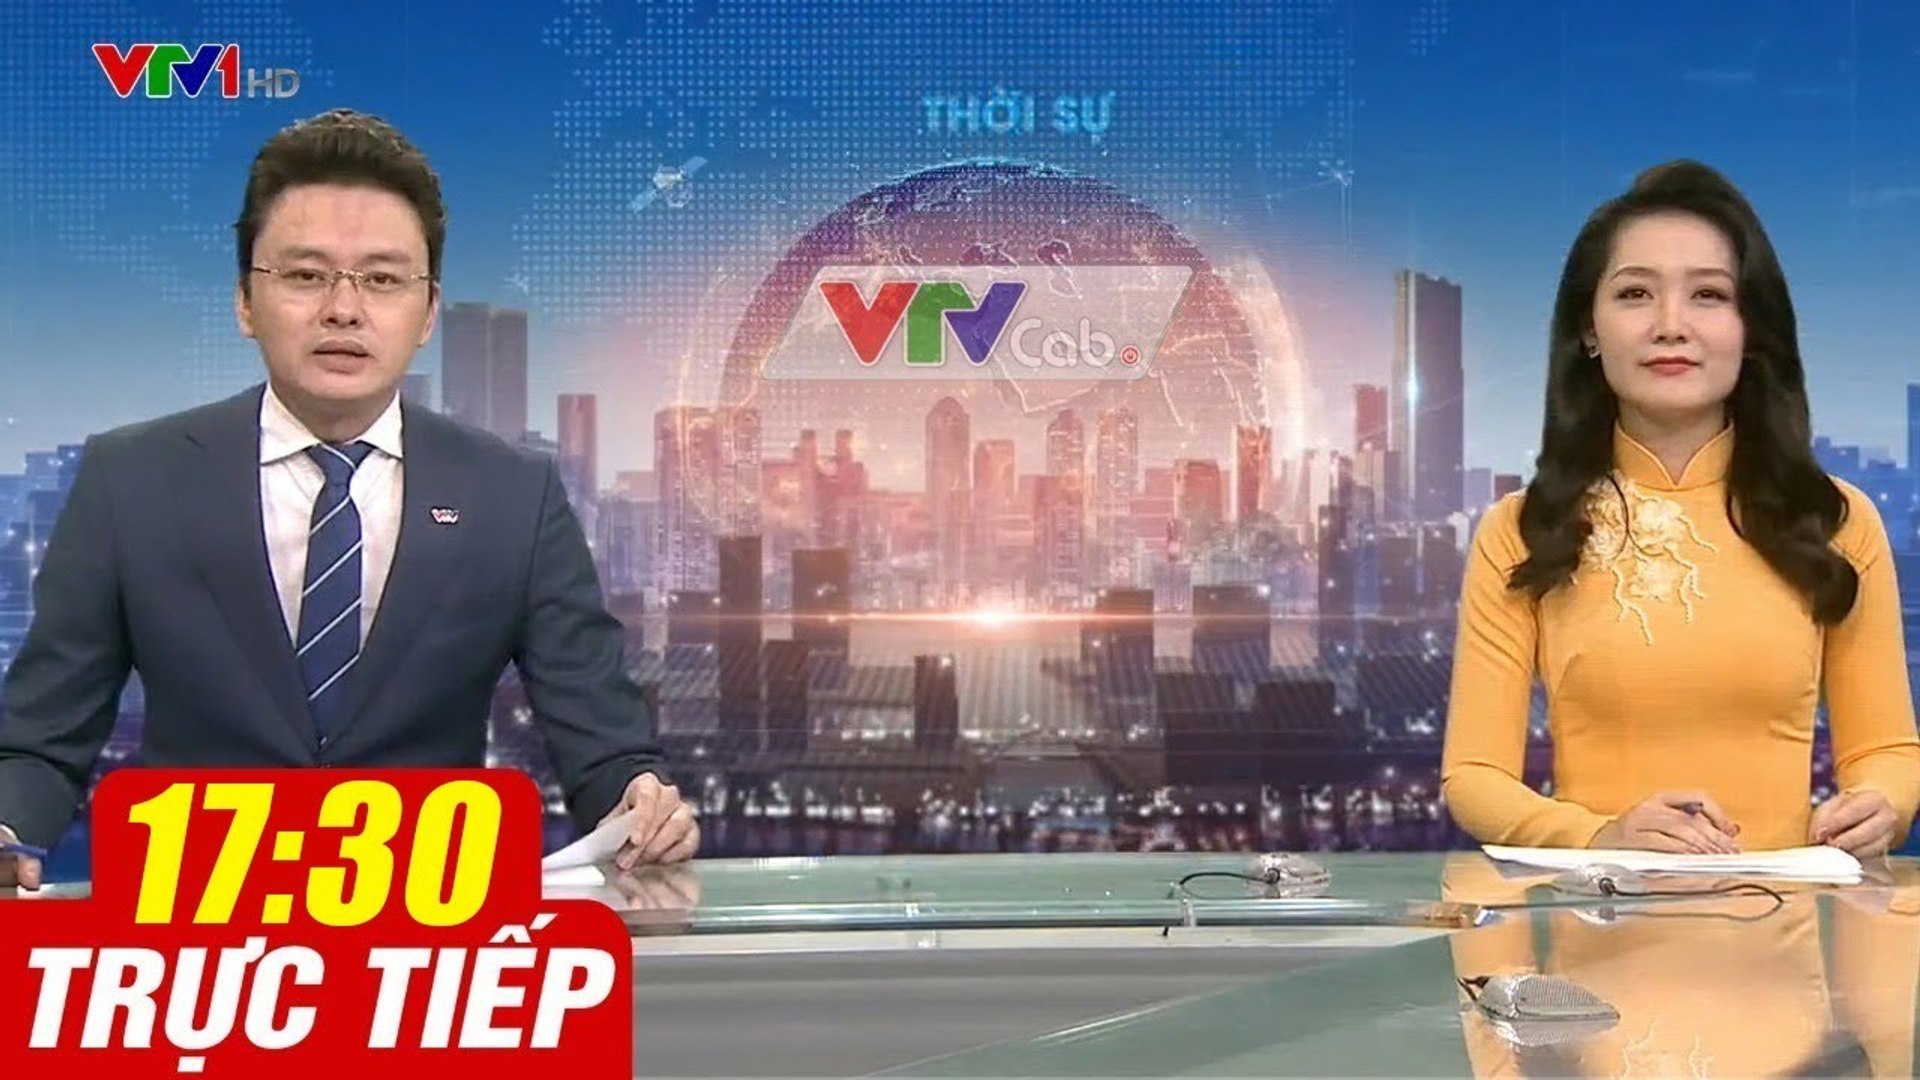 Trực Tiếp VIỆT NAM HÔM NAY 17h30 ngày 14.08.2020  Tin tức thời sự VTV1 mới nhất hôm nay